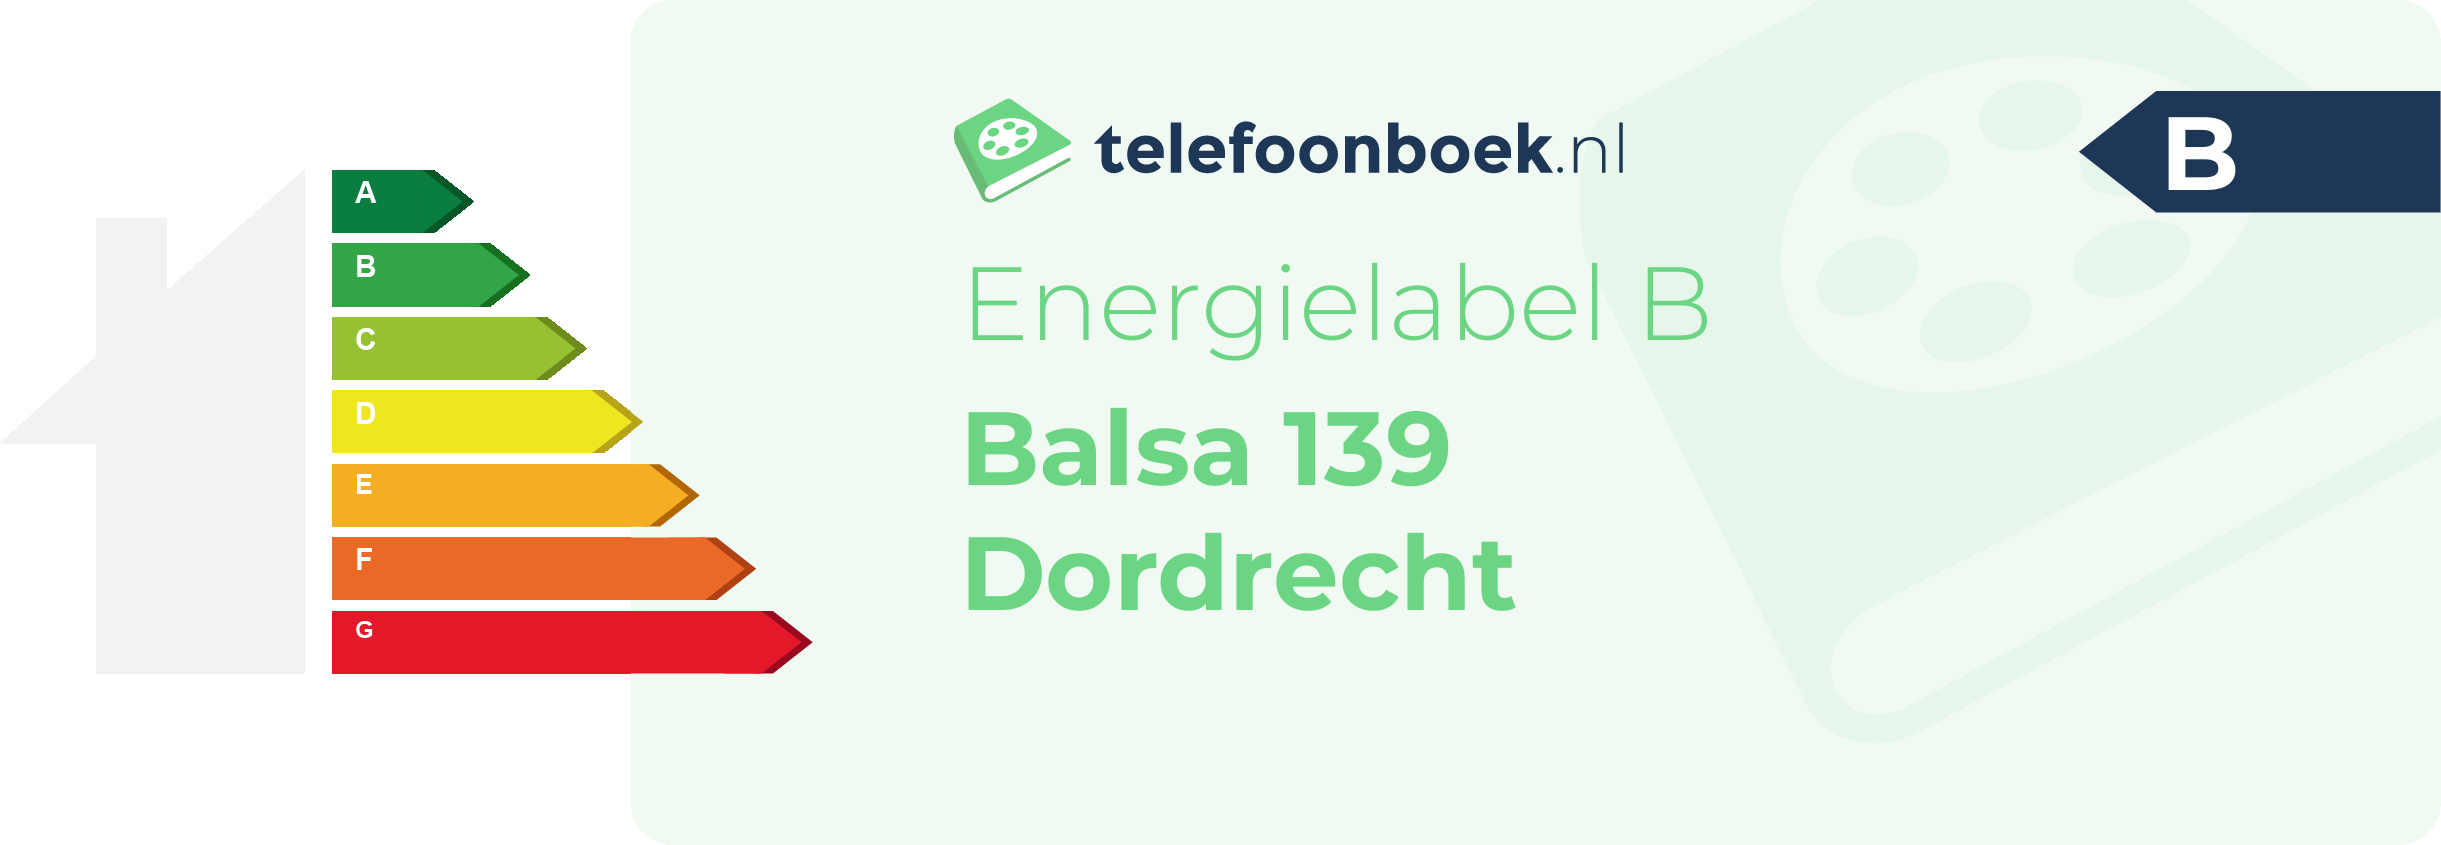 Energielabel Balsa 139 Dordrecht